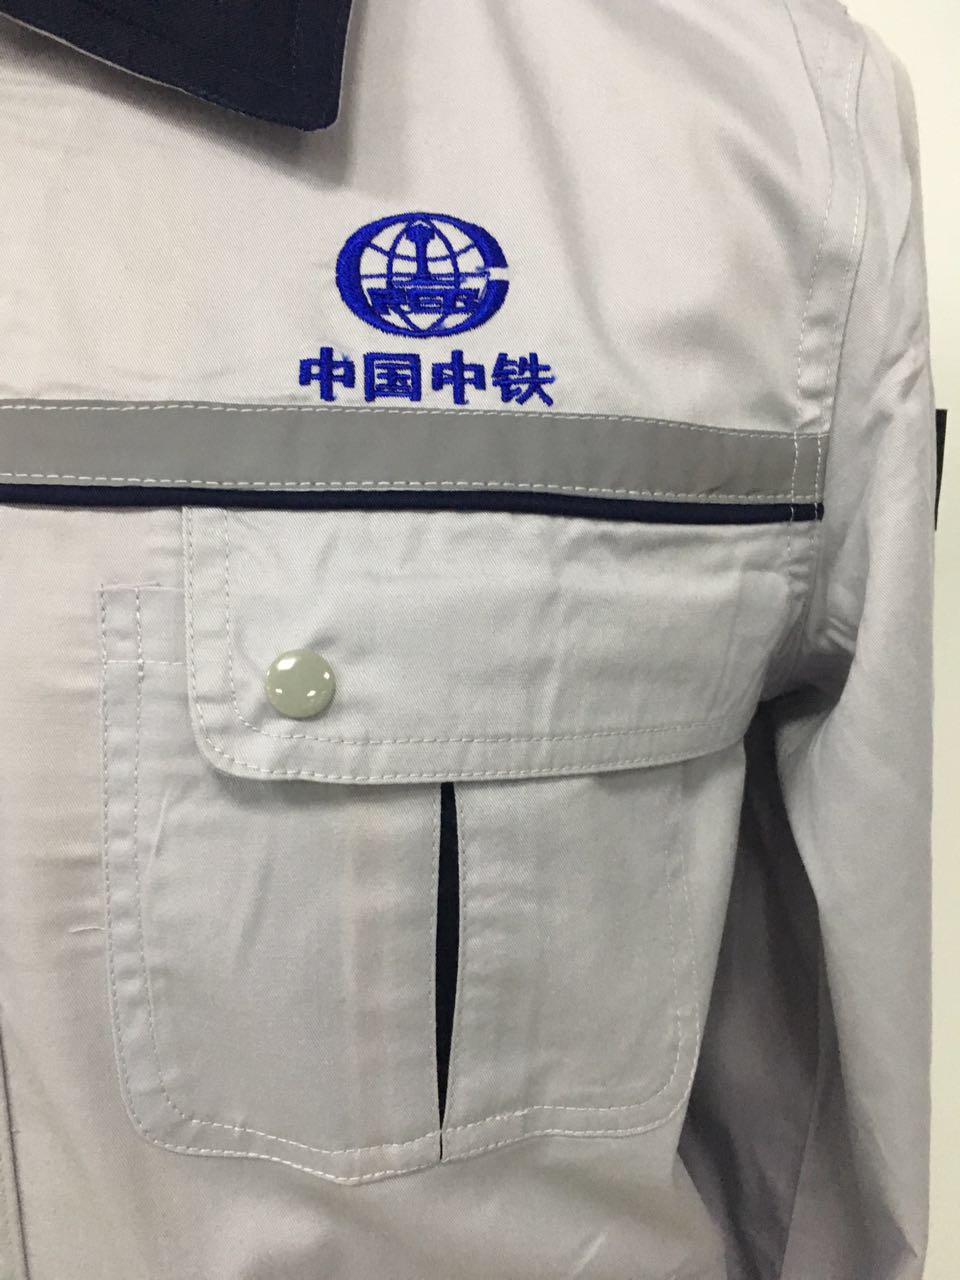 中国中铁工作服(图4)